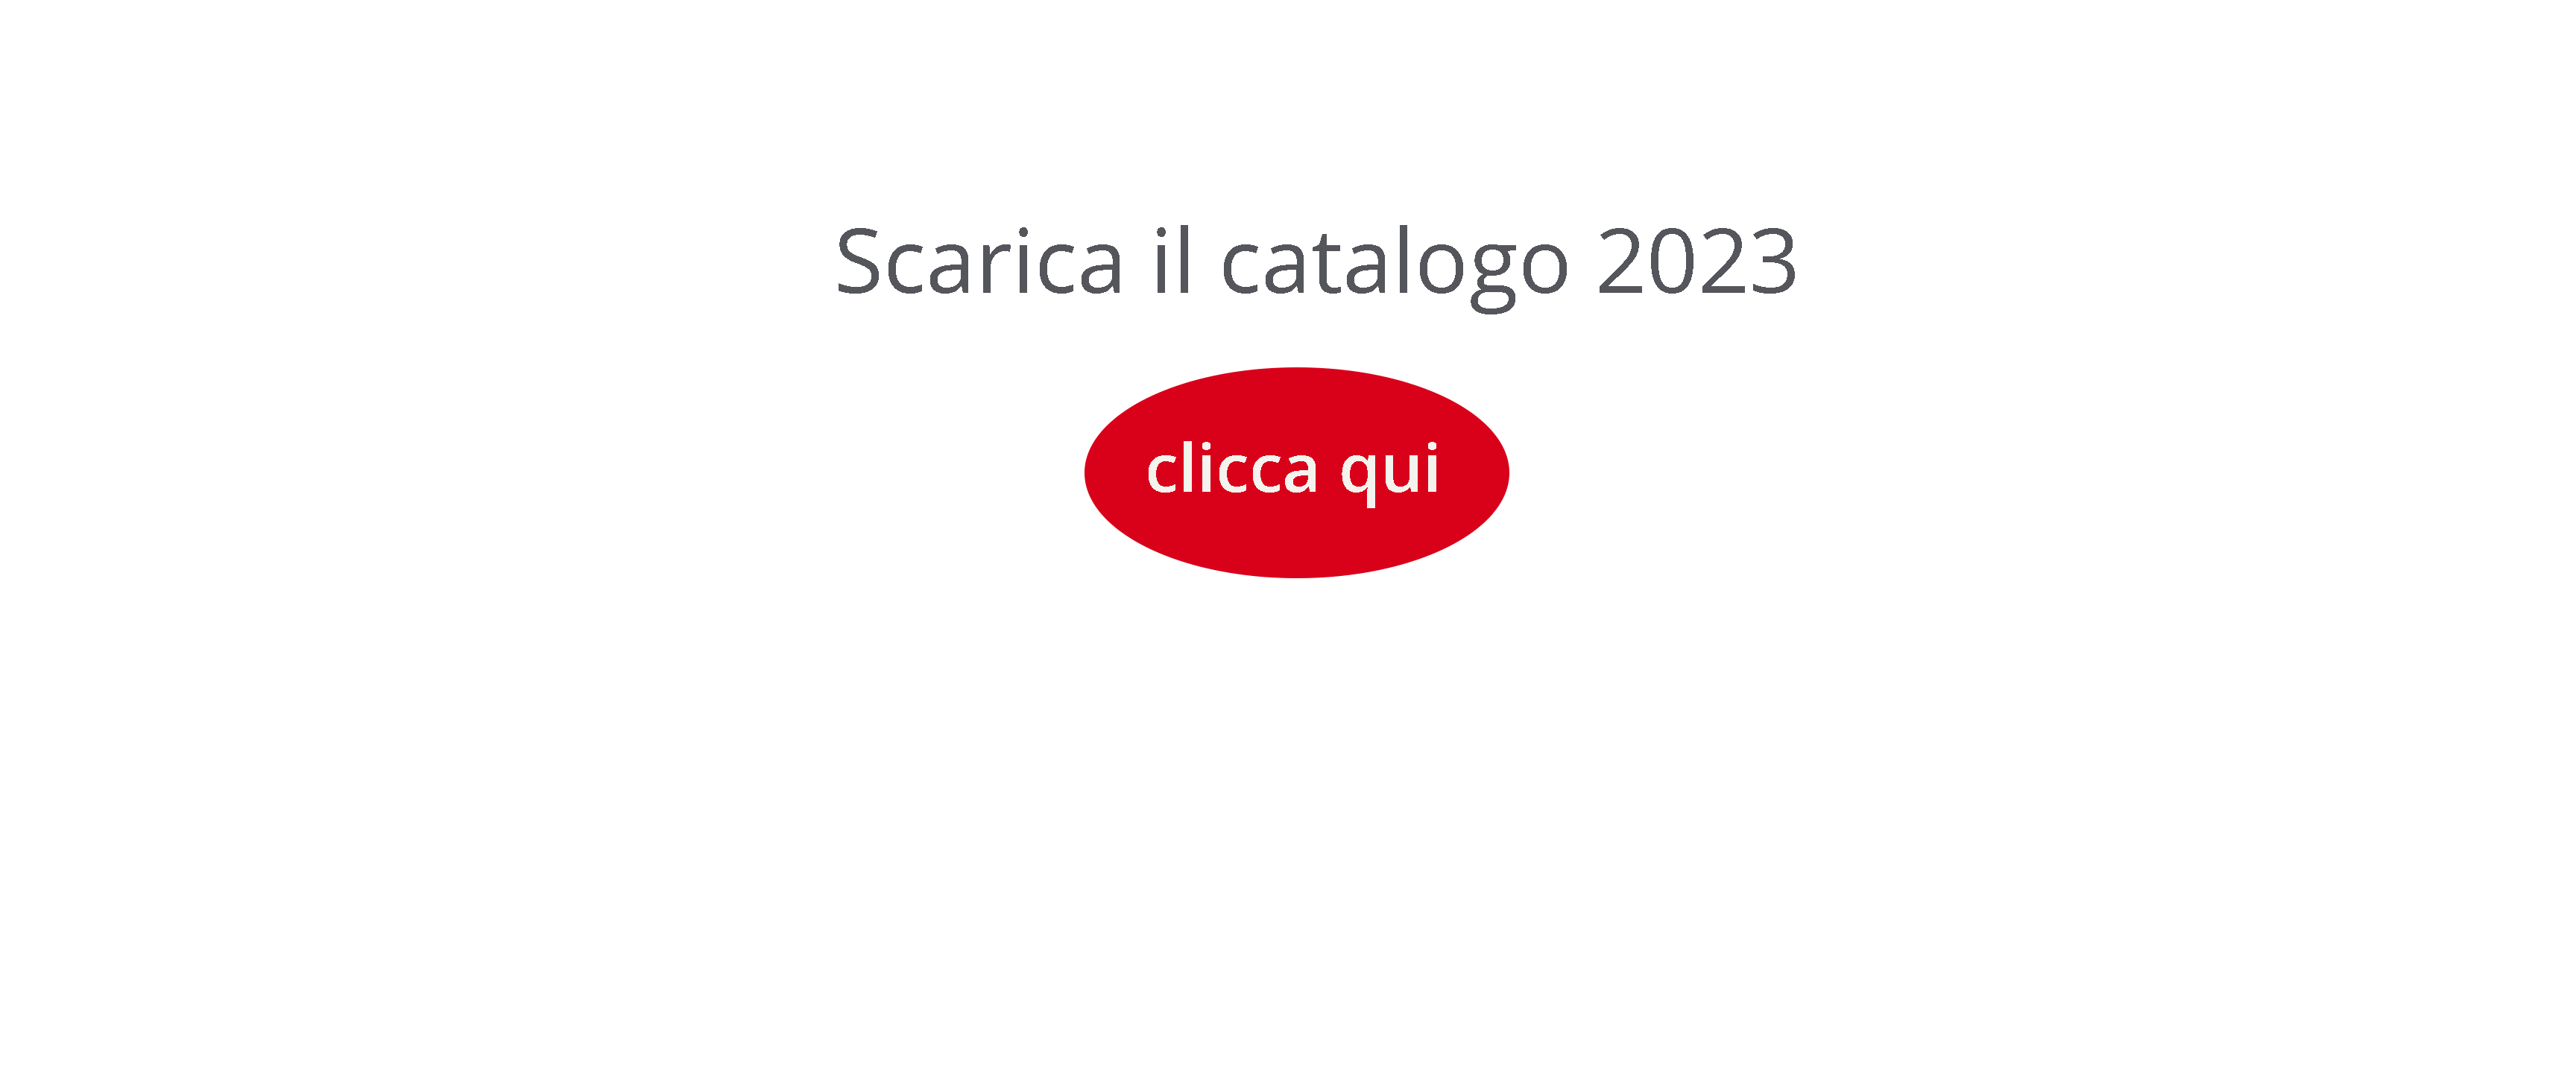 SCARICA IL CATALOGO 2022